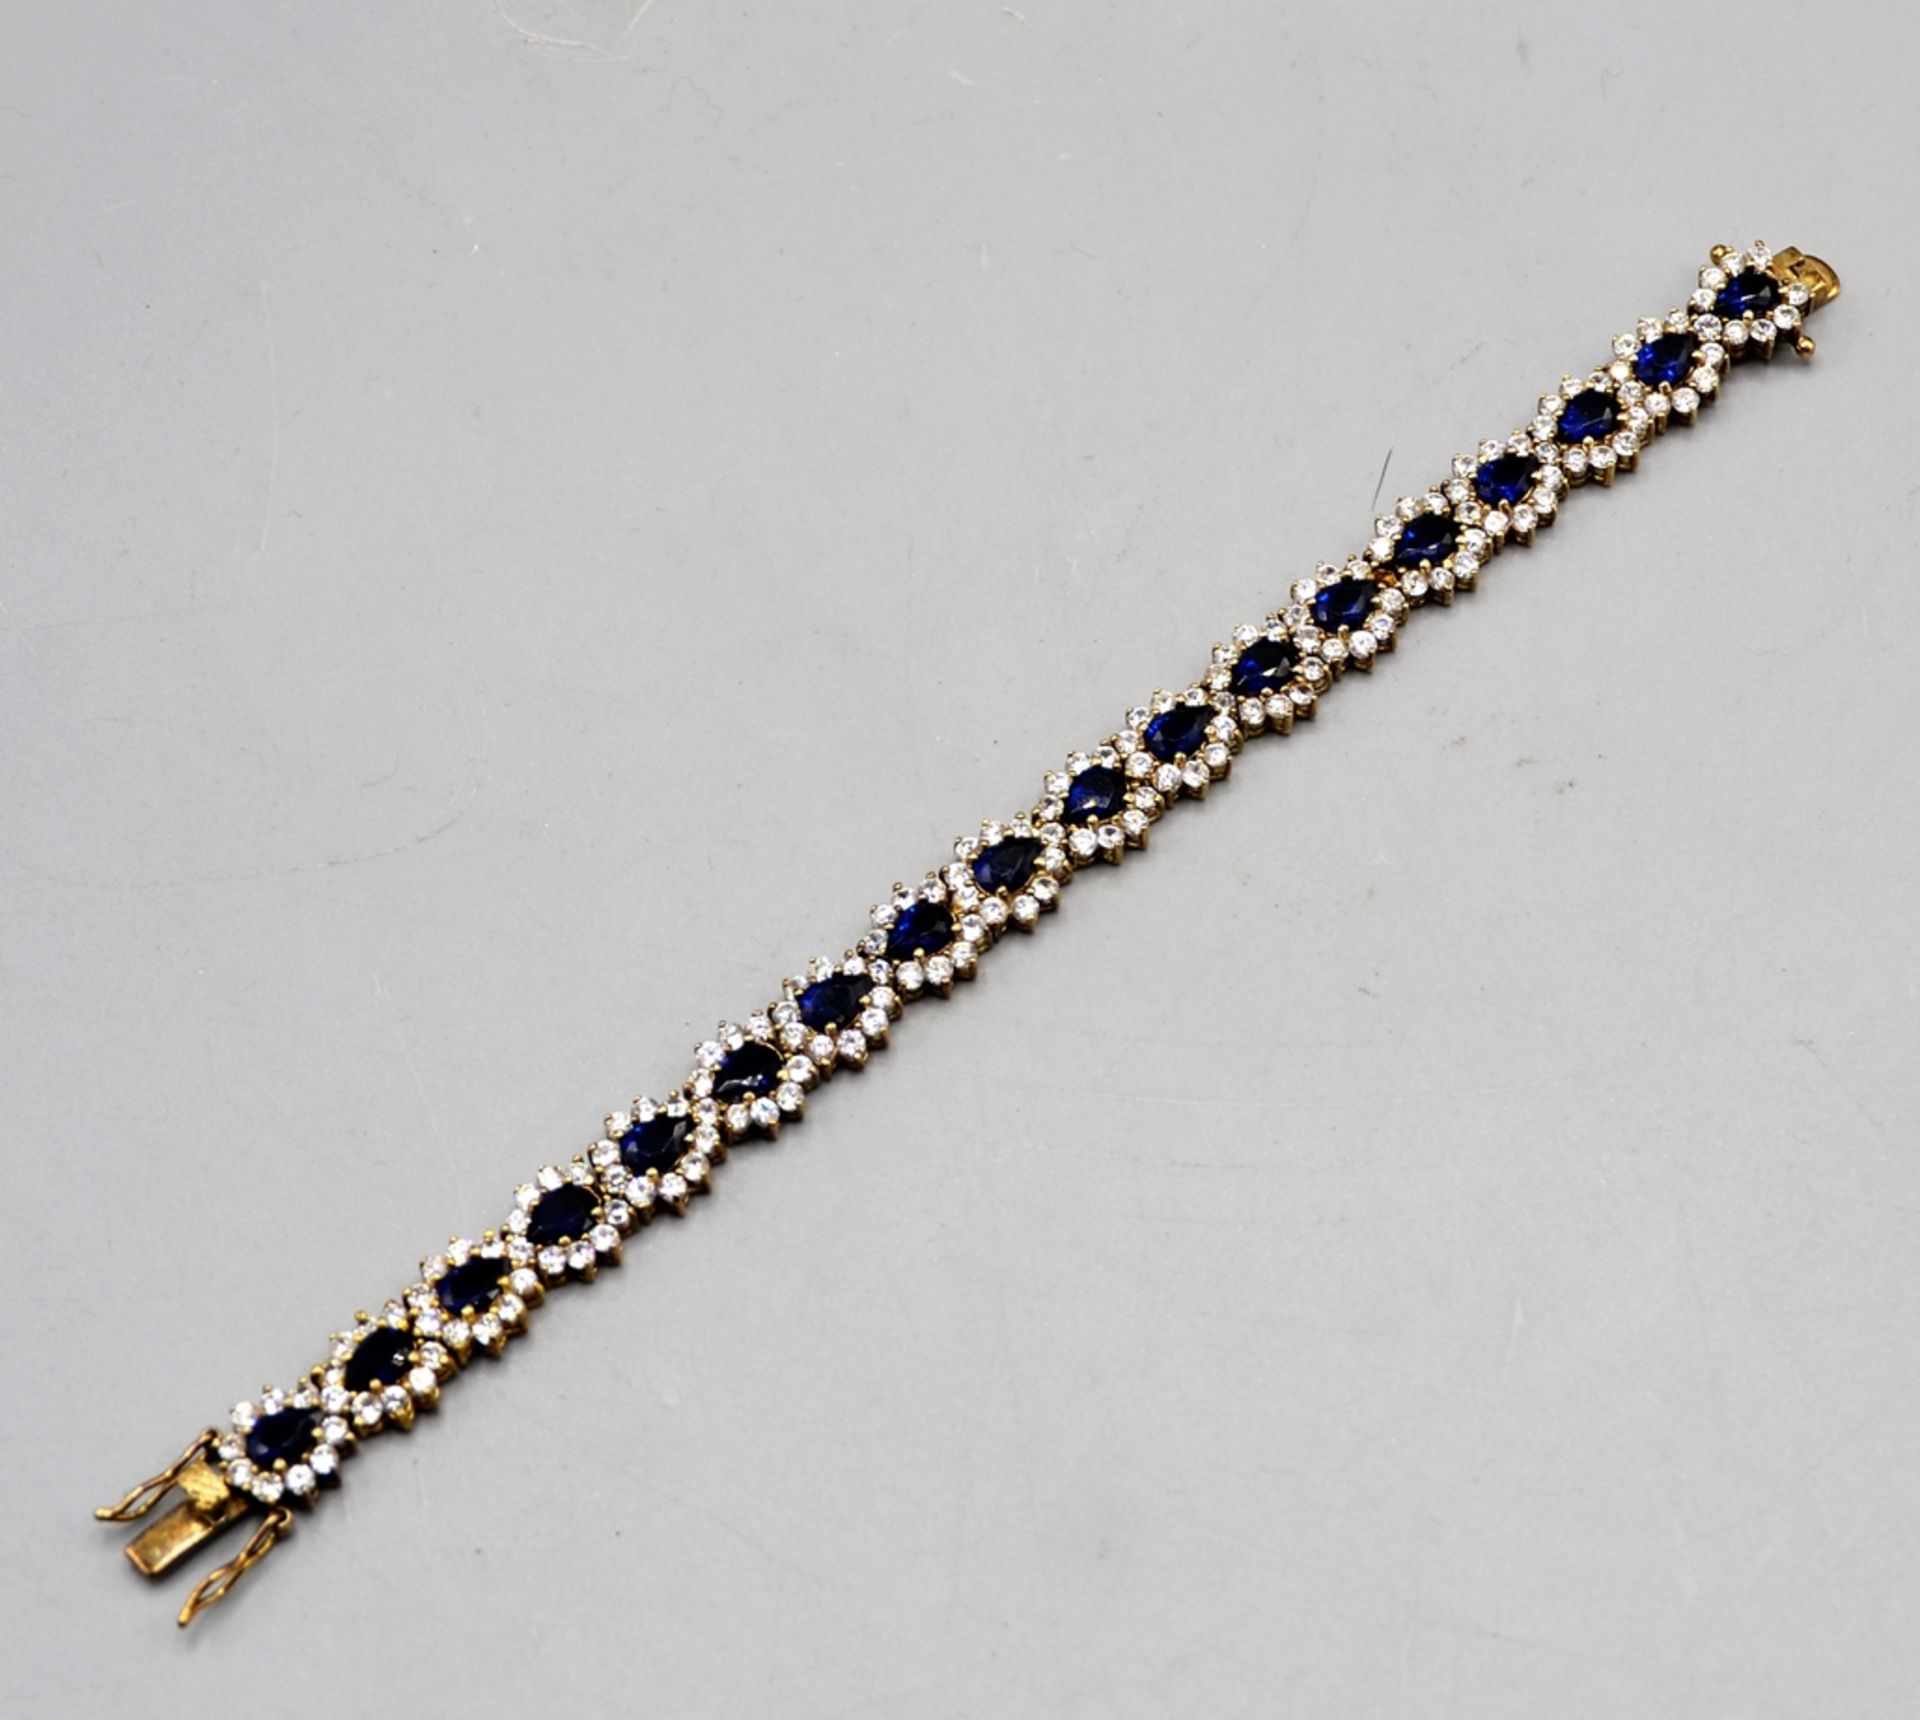 Armband Silber 925 vergoldet mit blauen u. weißen Glassteinen, ca. 18,5 cm, 26,9 g